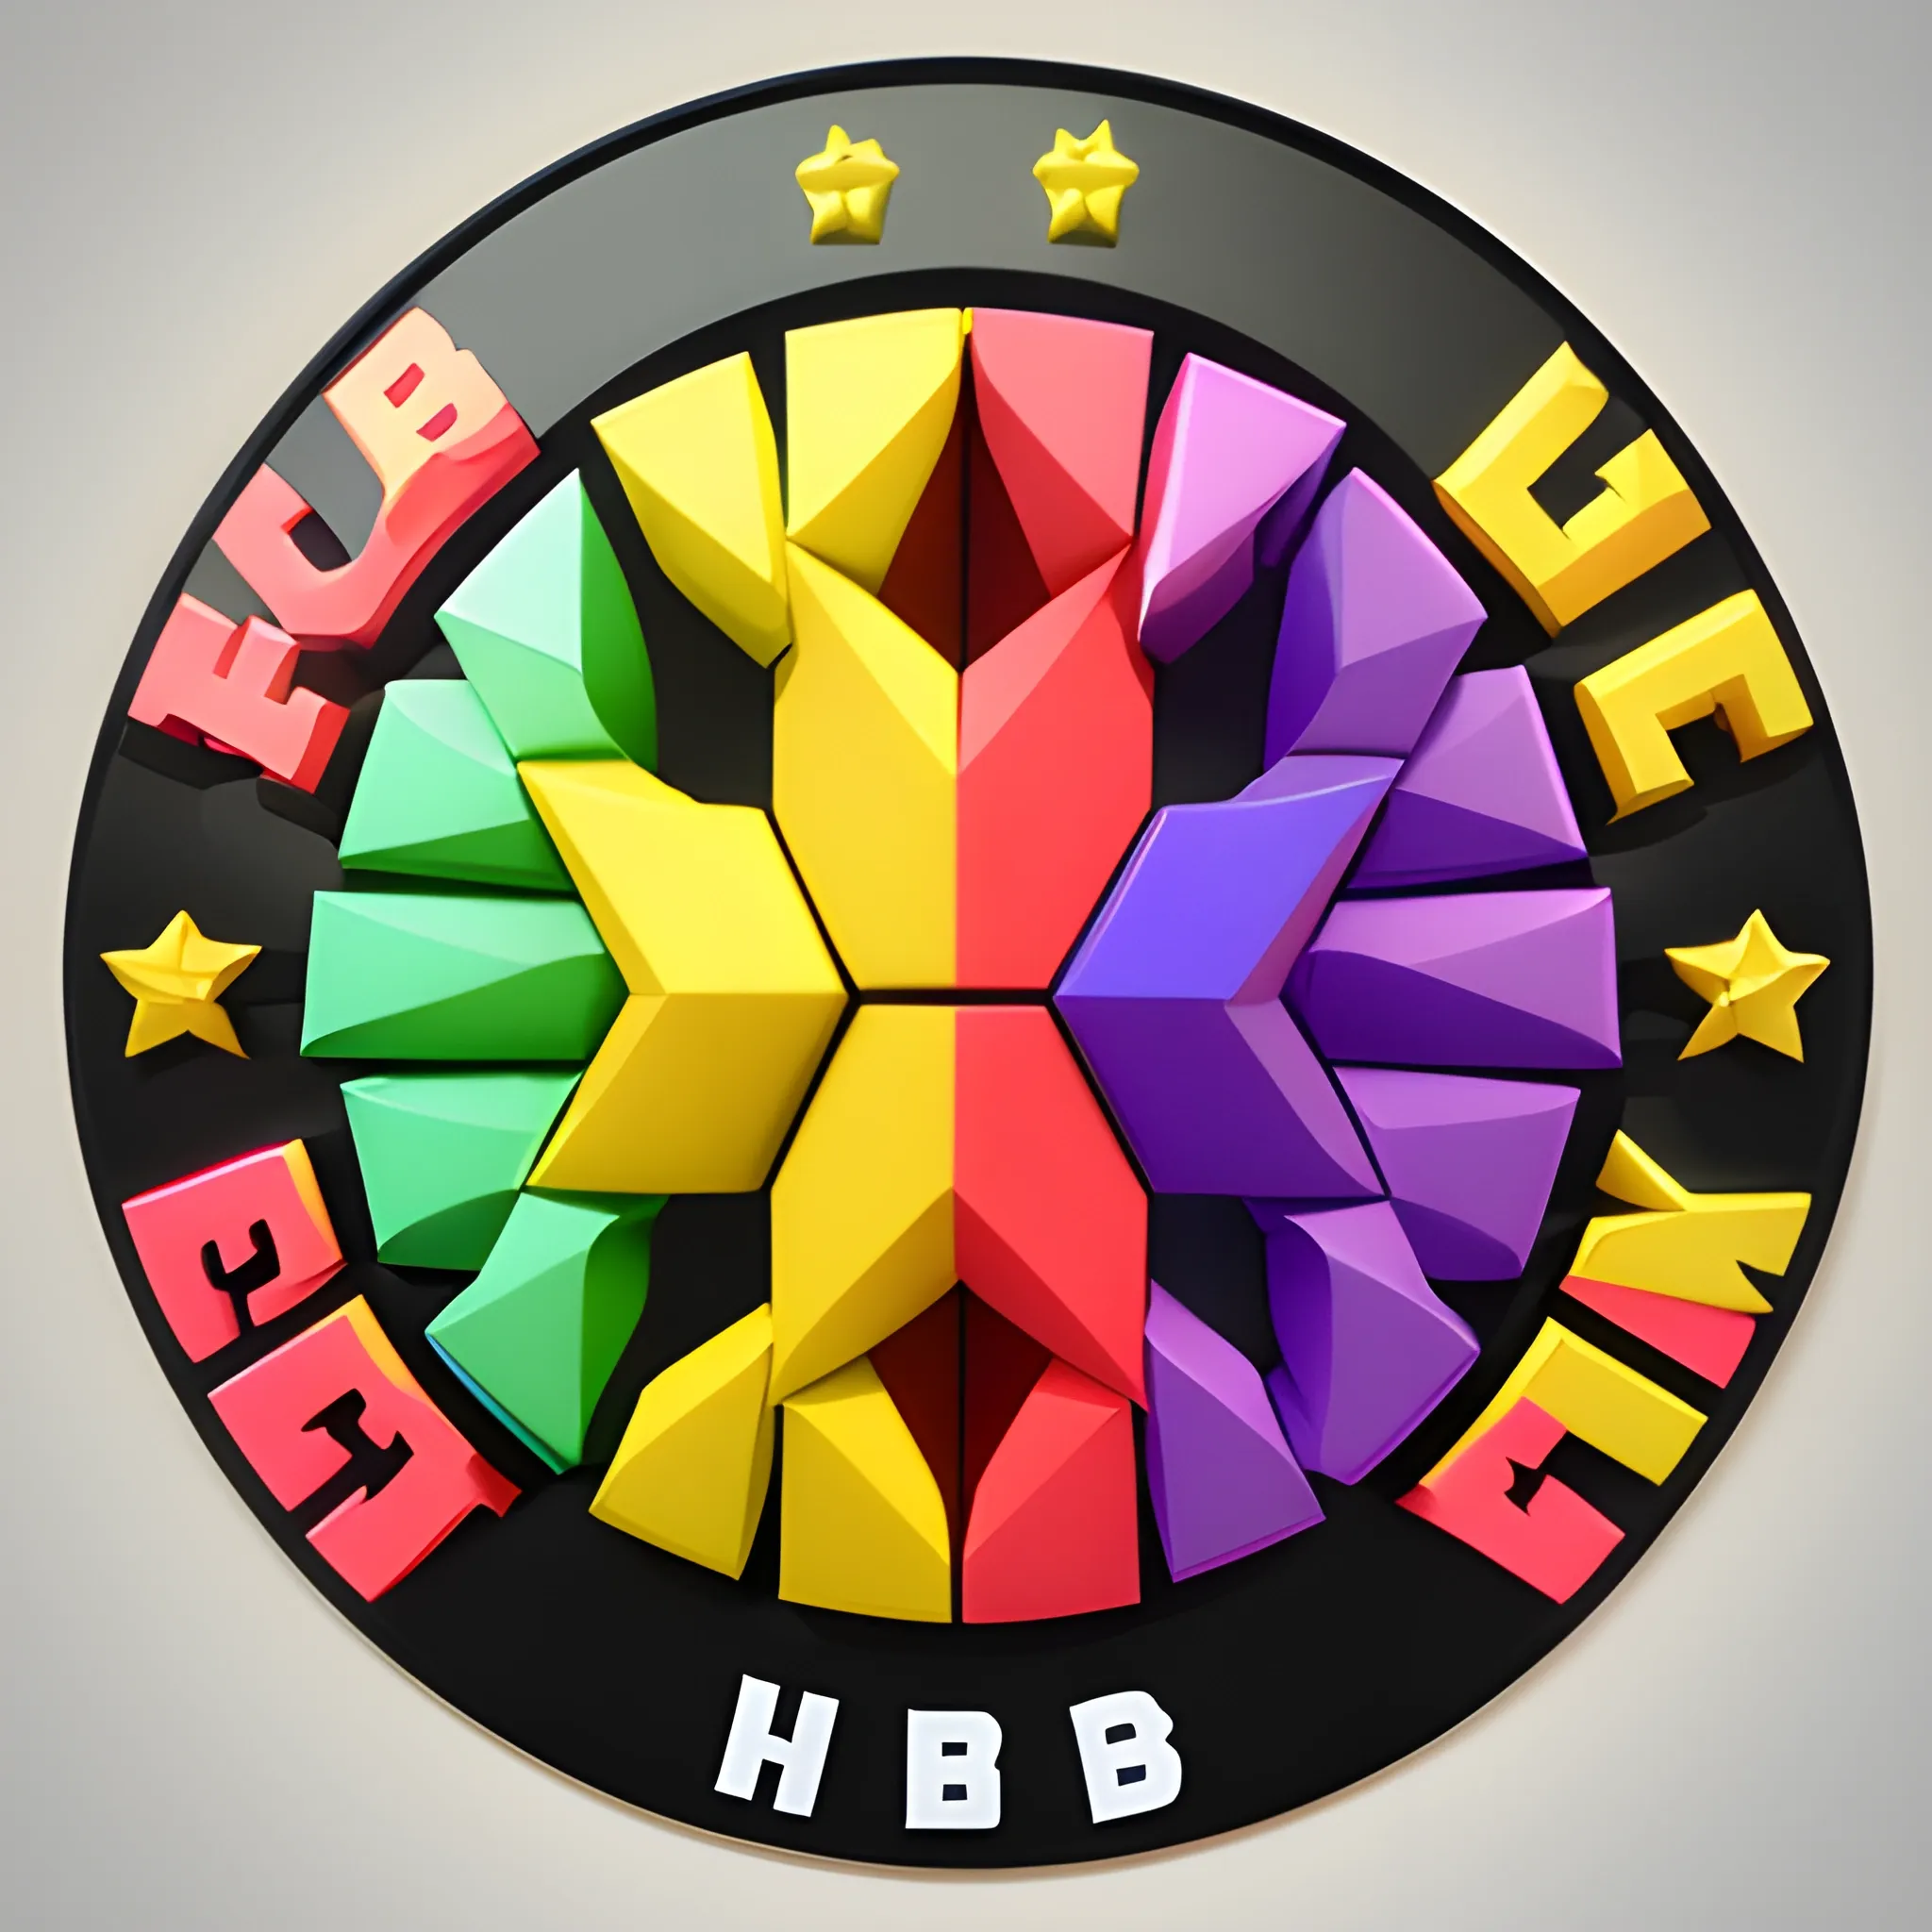 Huba Team bright logo, 3D